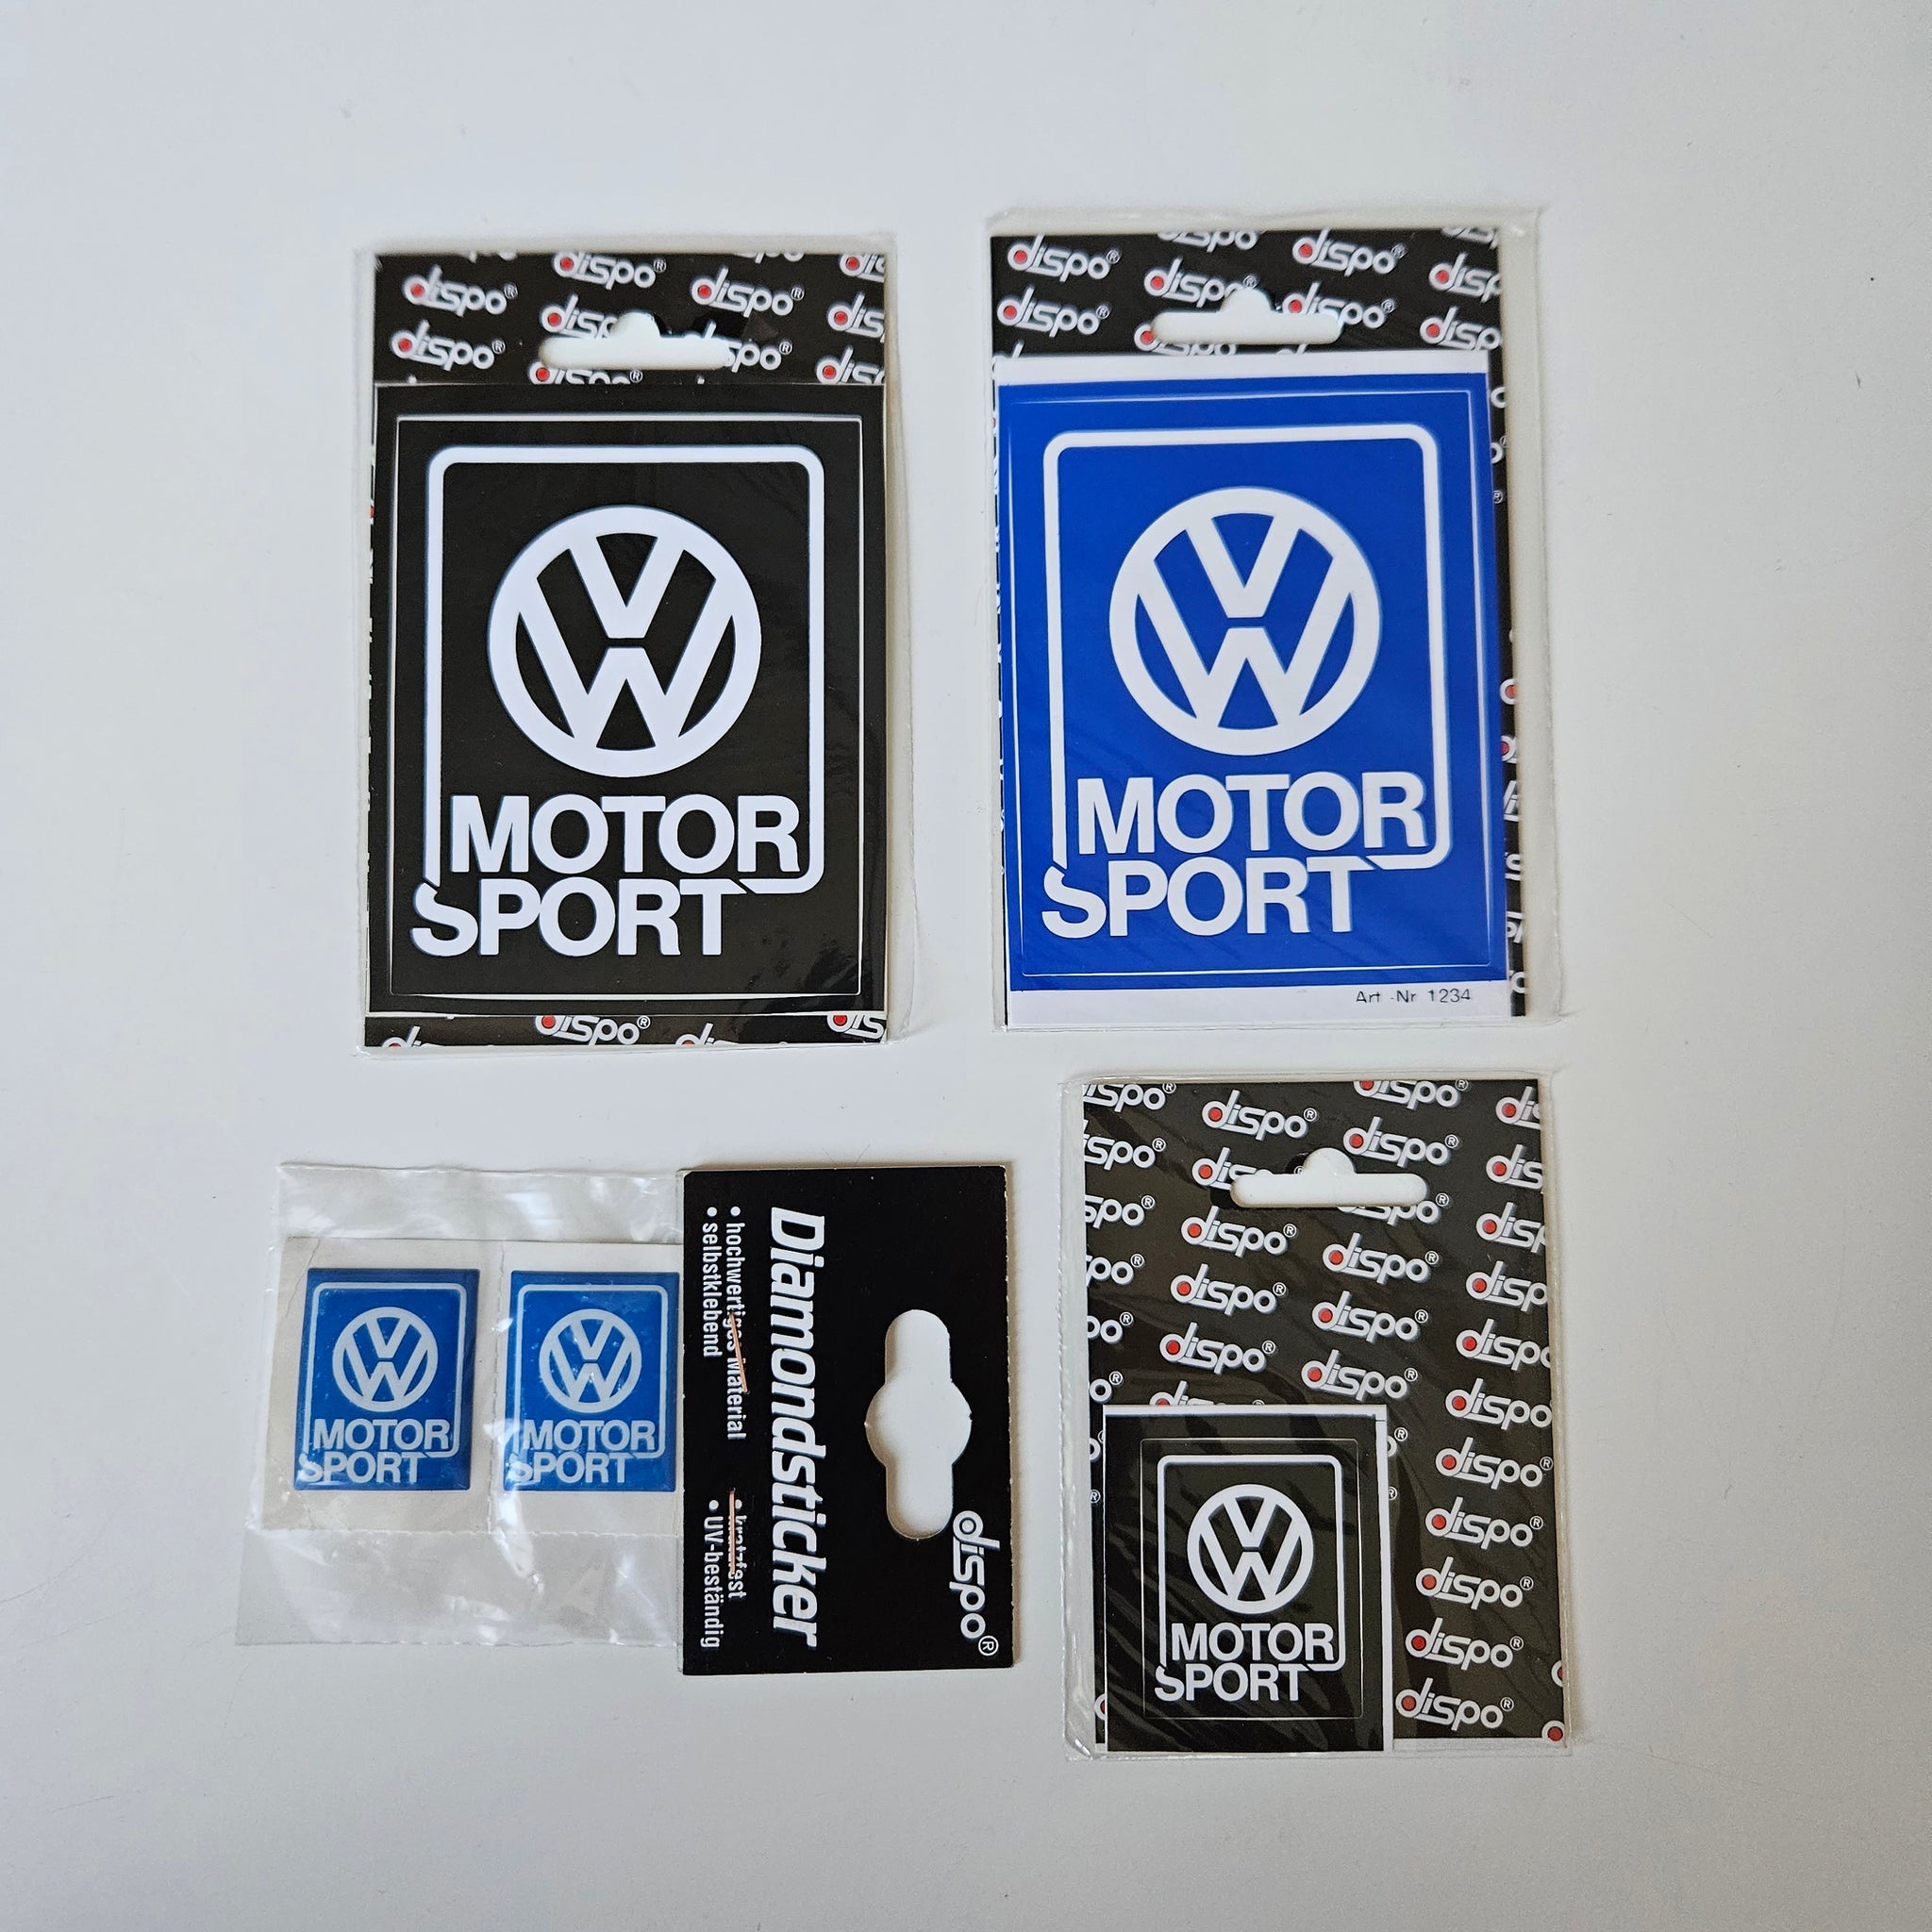 Sticker VW Motor Sport